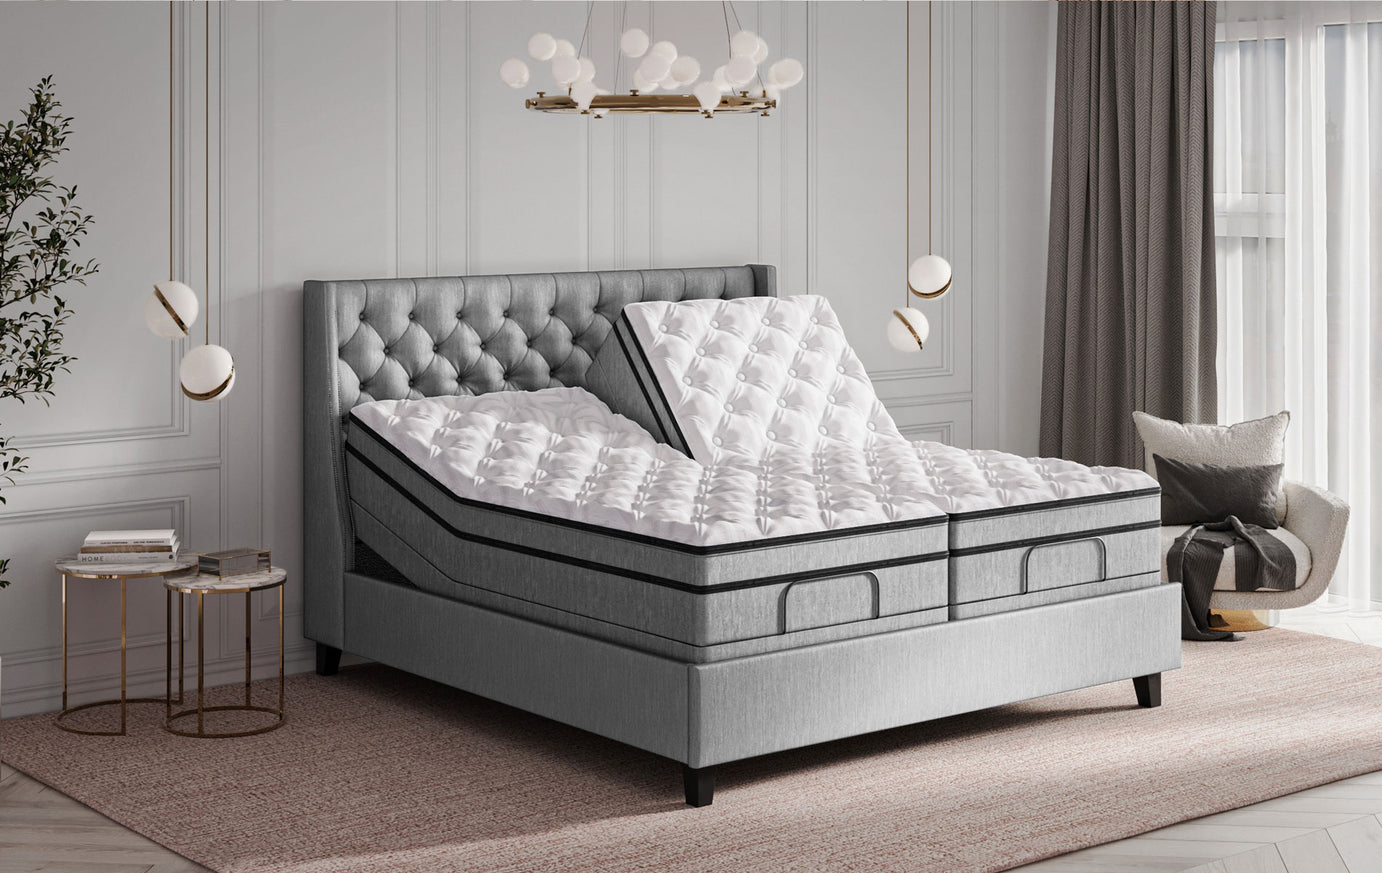 Personal Comfort R12 Smart Bed v Sleep Number 360 i8 Bed